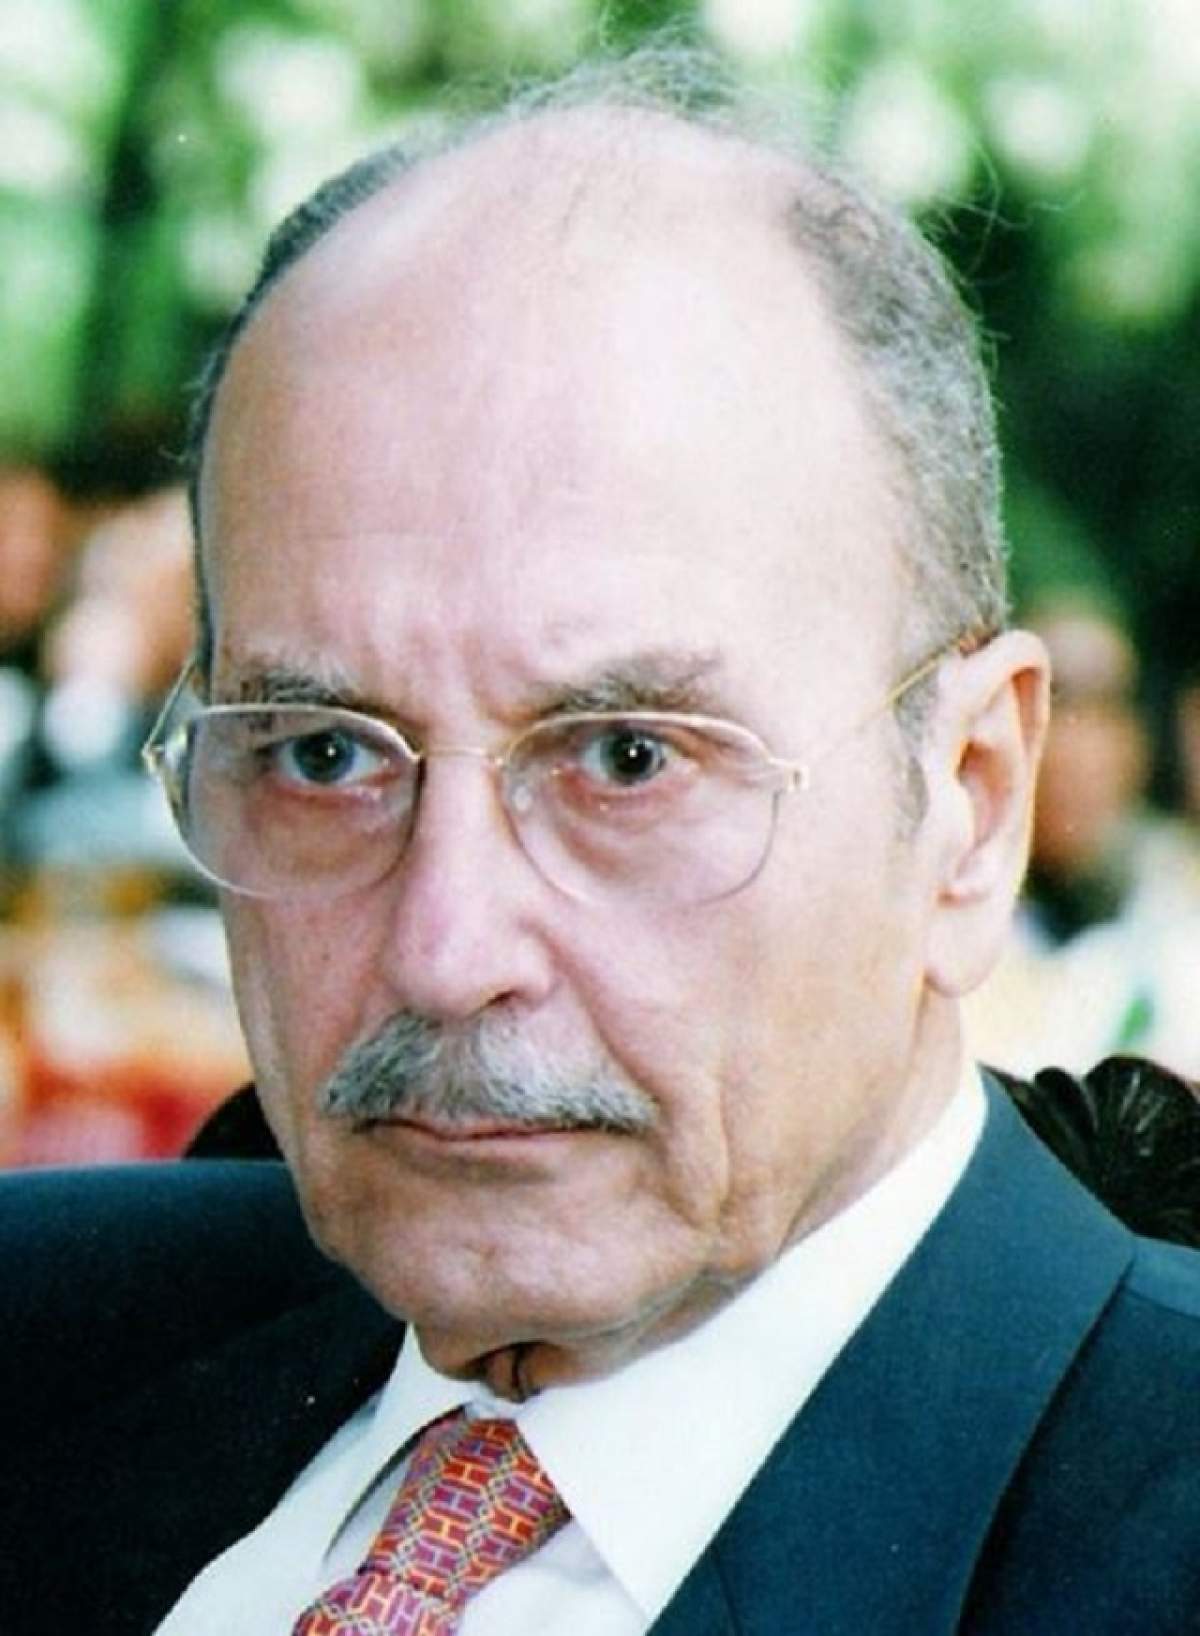 Veste tristă! A murit fostul președinte grec Konstantinos Stephanopoulos